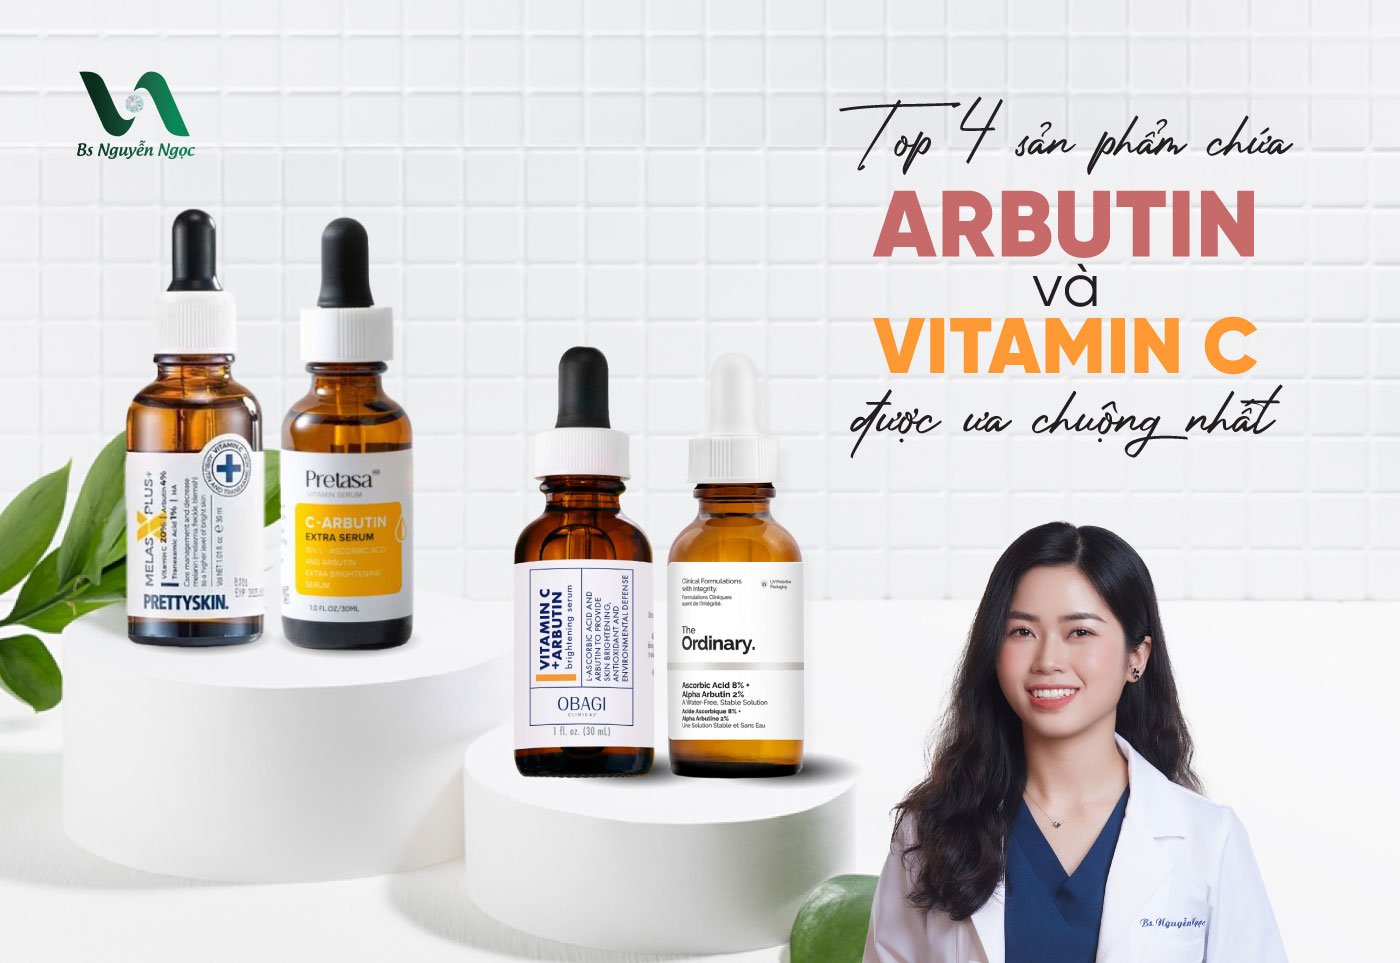 Top 4 sản phẩm chứa Arbutin và Vitamin C được ưa chuộng nhất